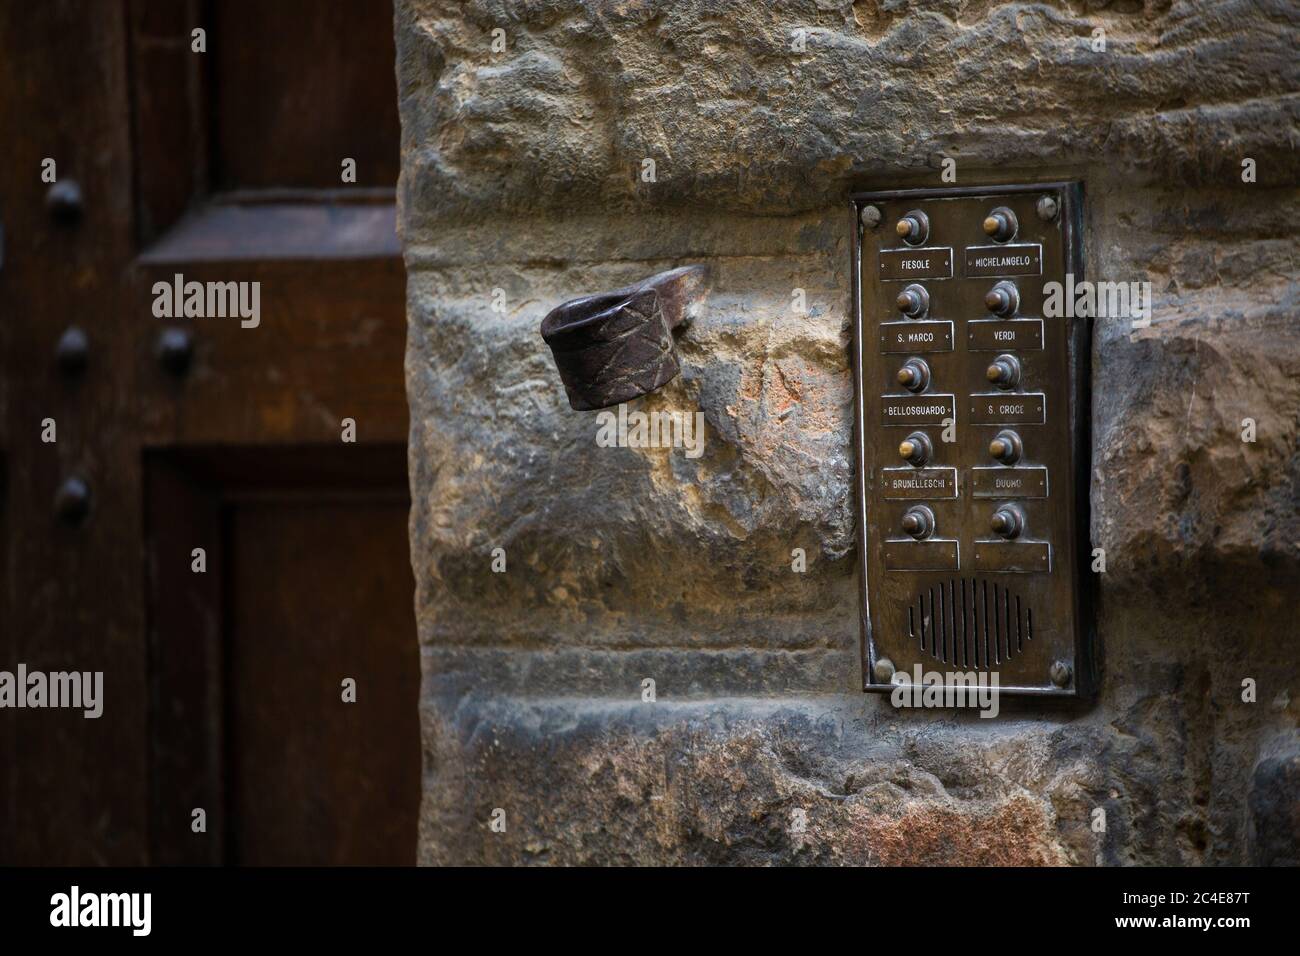 Citofono d'epoca all'ingresso dell'edificio. La vecchia targhetta con i pulsanti sulla piastra in bronzo si trova sulla parete in pietra. Concetto di sicurezza domestica. Maggio 2013. Pisa, Italia Foto Stock